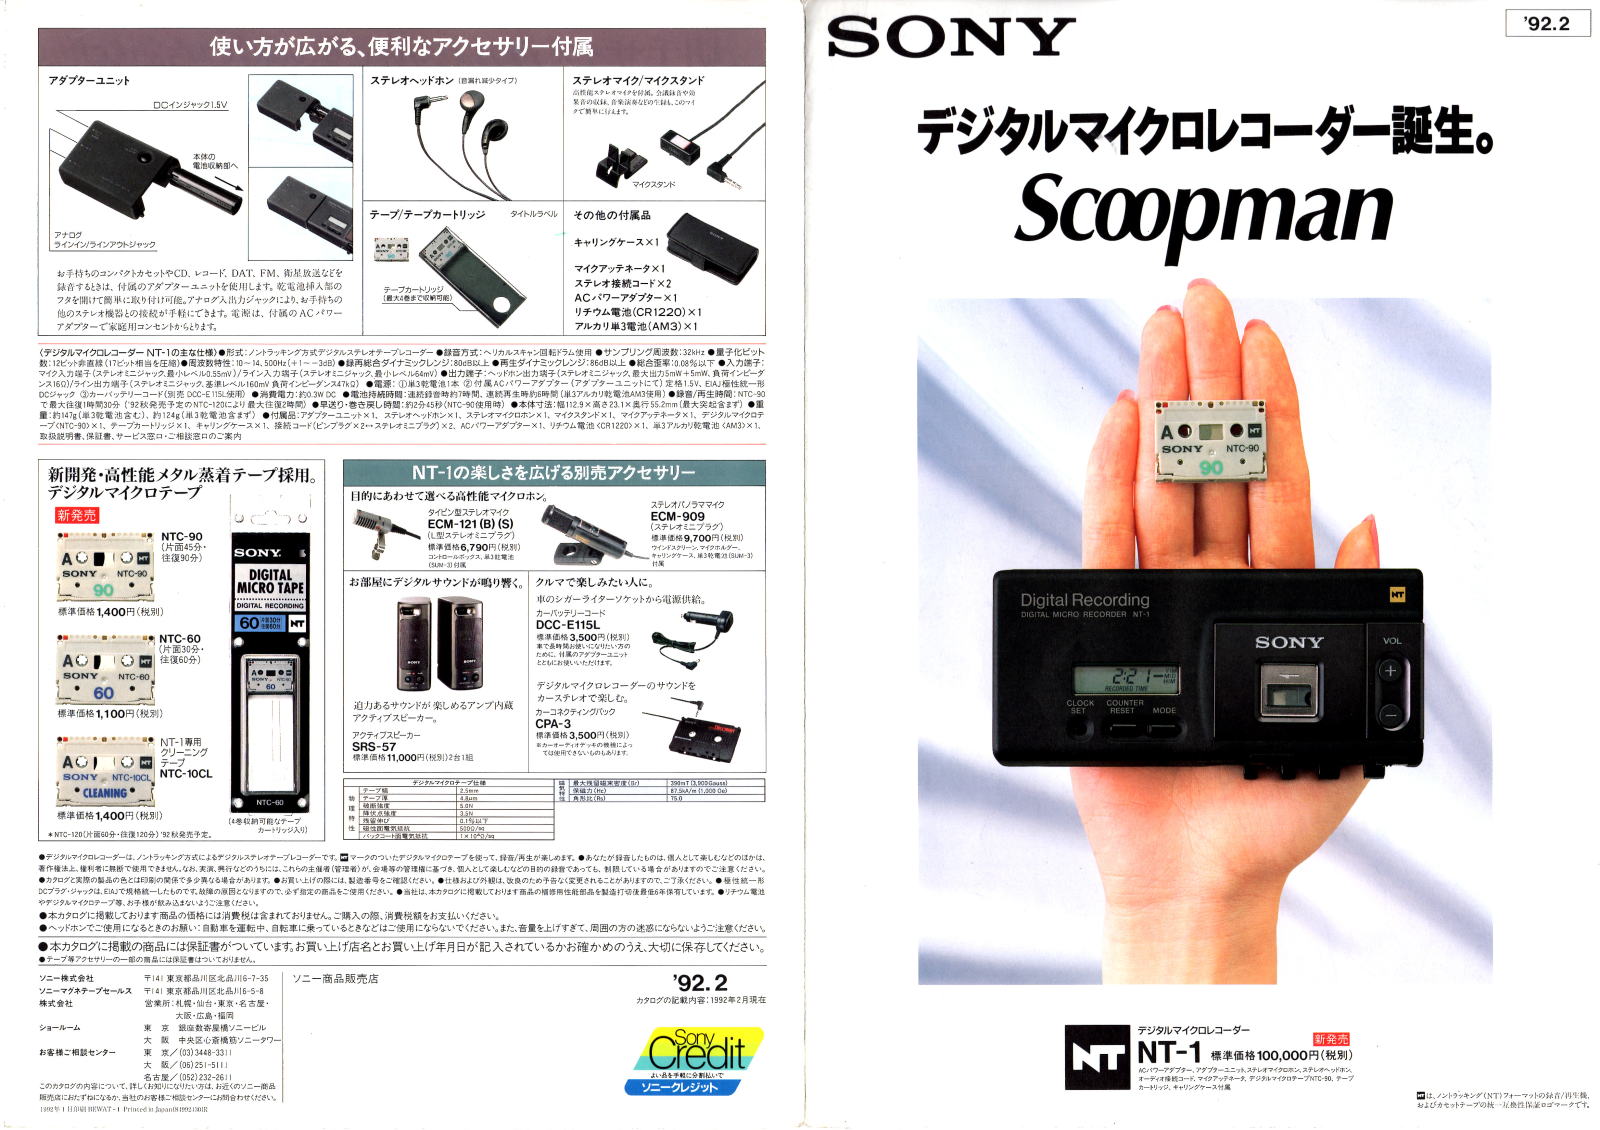 SONY オーディオ機器 カタログ 関連資料 1992年